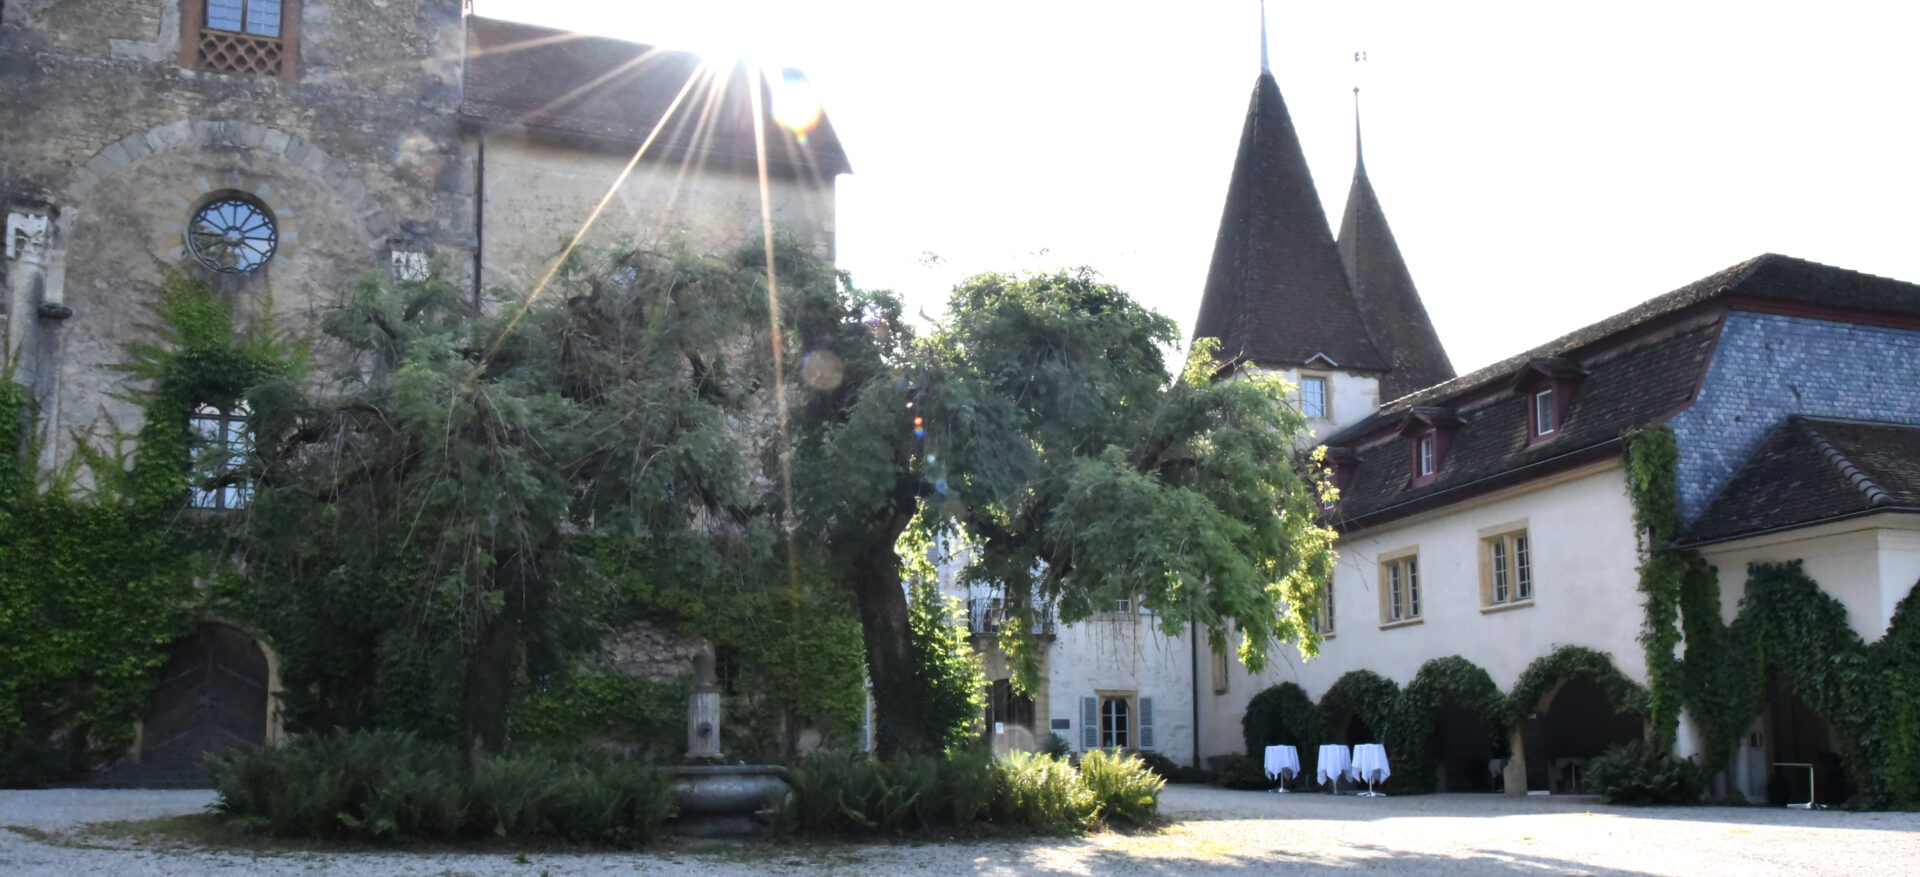 Le château de Villars-les-Moines (BE) est un ancien prieuré clunisien | © Raphaël Zbinden